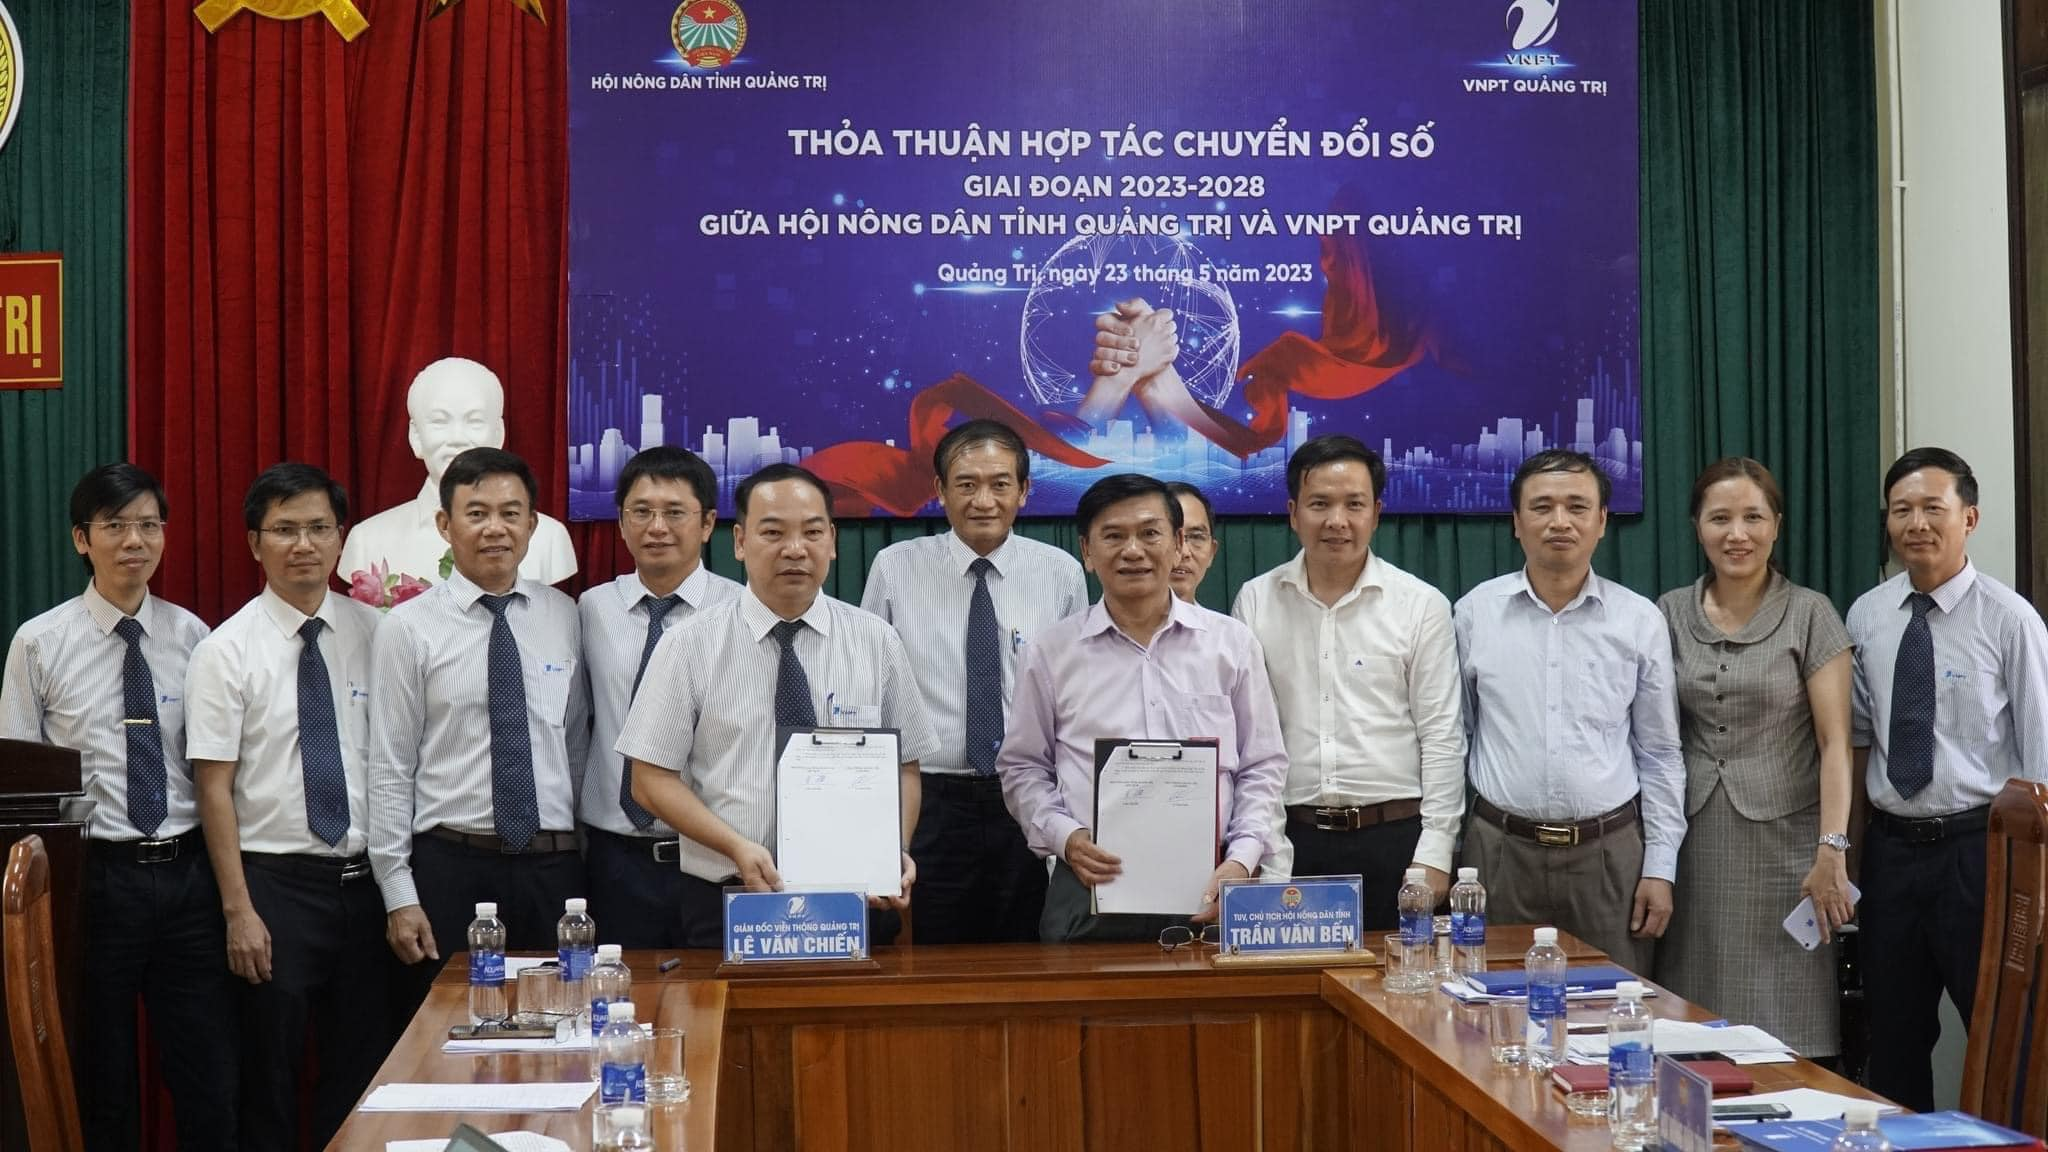 VNPT Quảng Trị và Hội Nông dân tỉnh Quảng Trị, ký kết thoả thuận hợp tác Chuyển đổi số giai đoạn 2023-2028